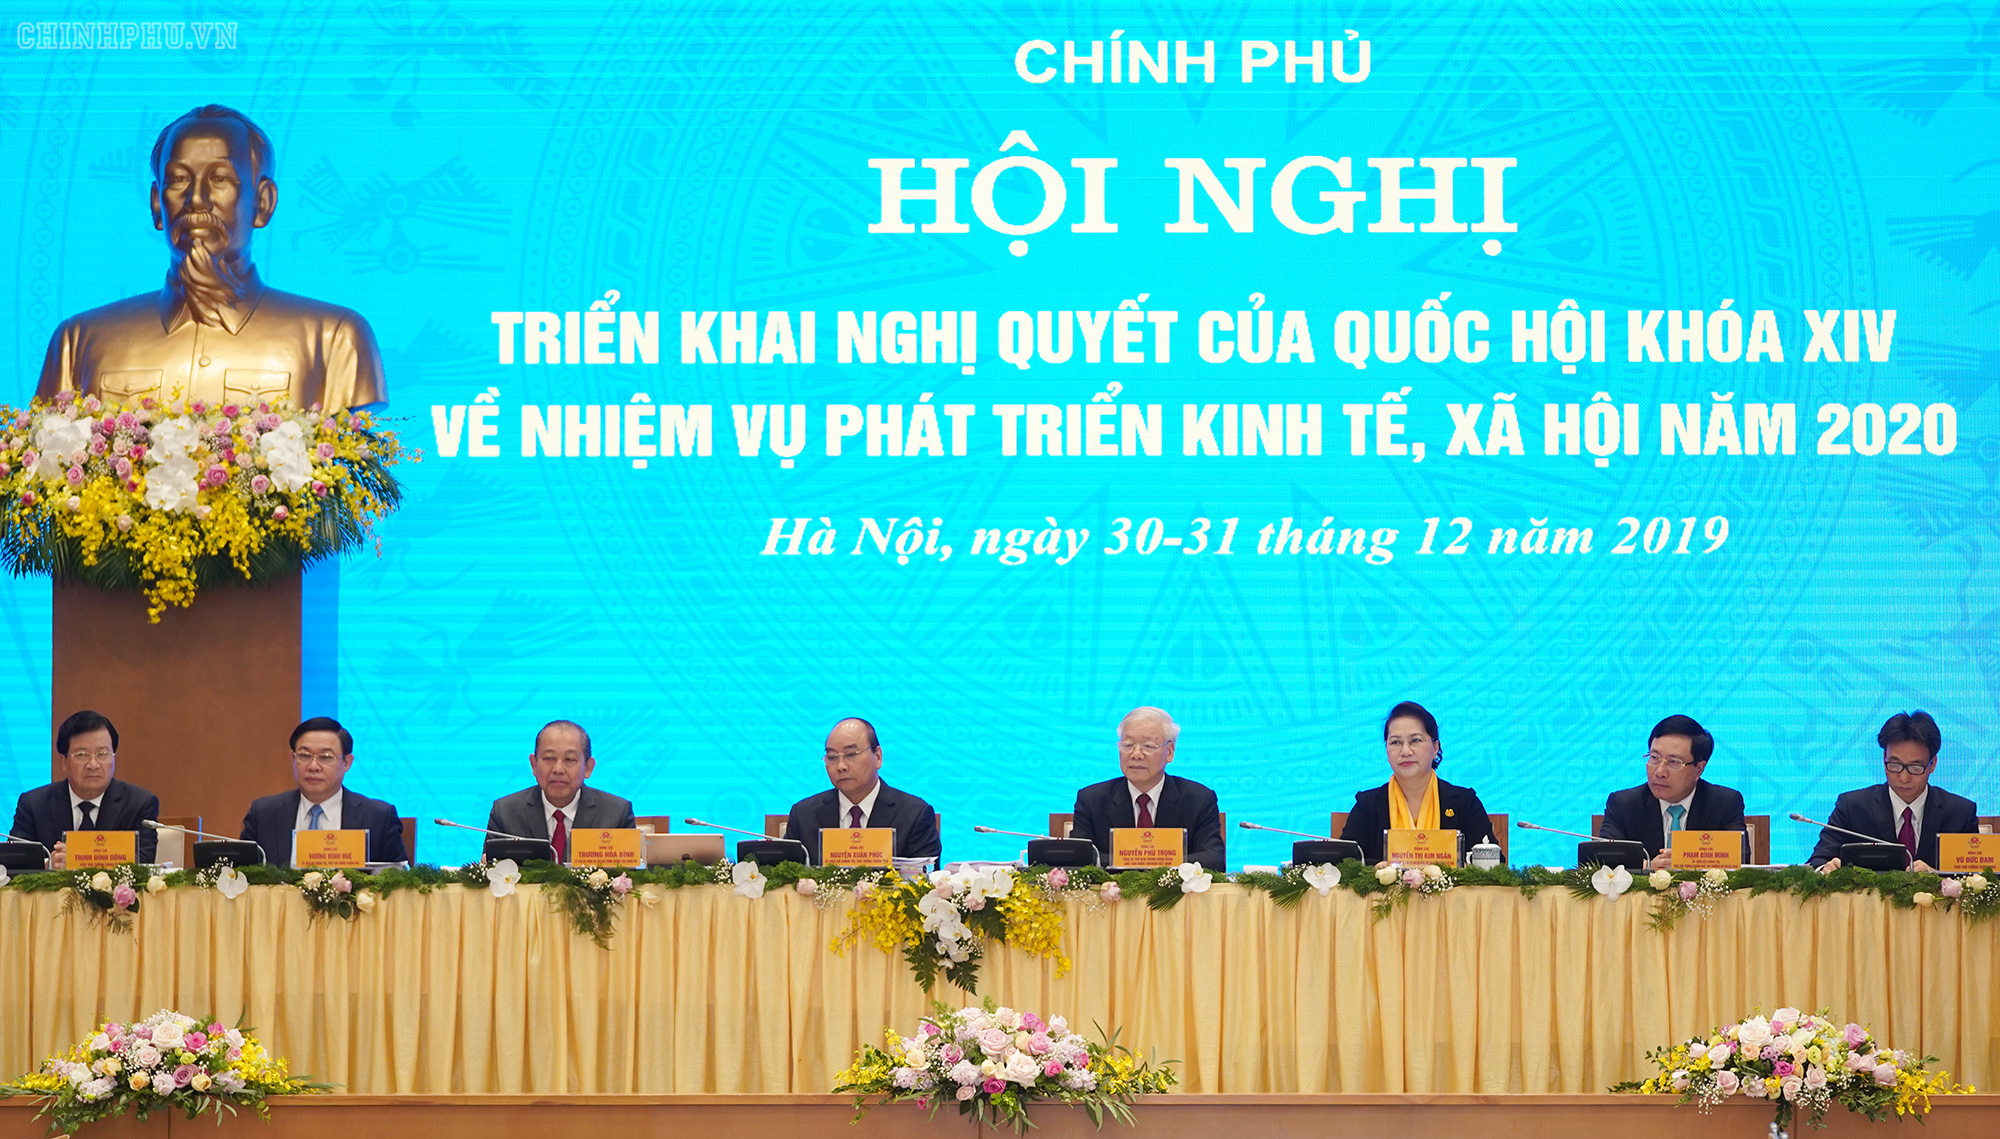 Tổng Bí thư, Chủ tịch nước Nguyễn Phú Trọng dự Hội nghị Chính phủ với các địa phương - Ảnh 4.